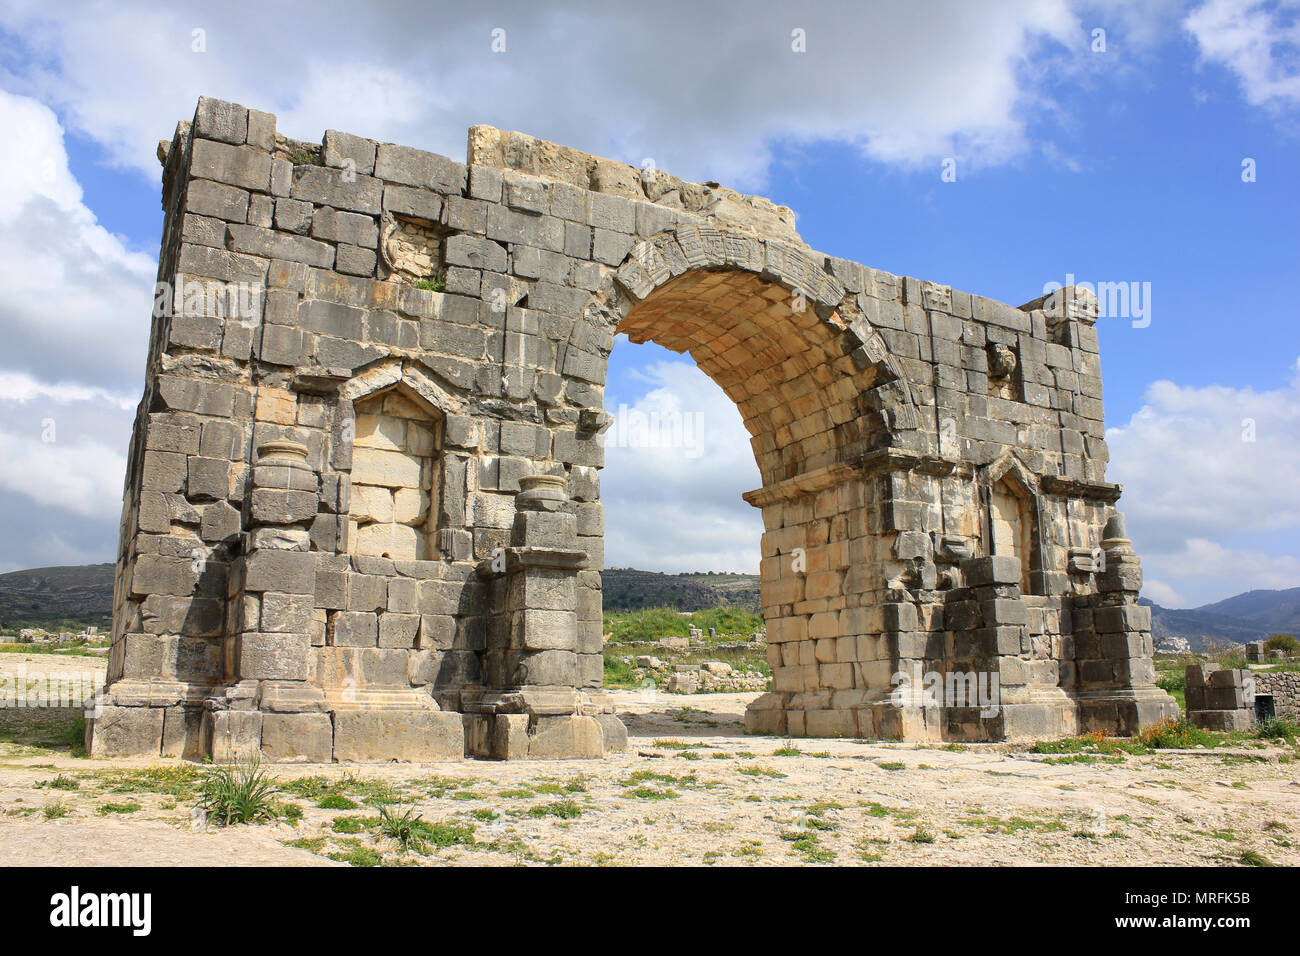 El arco triunfal dedicado al emperador Caracalla en el siglo III ruinas de Volubilis Foto de stock